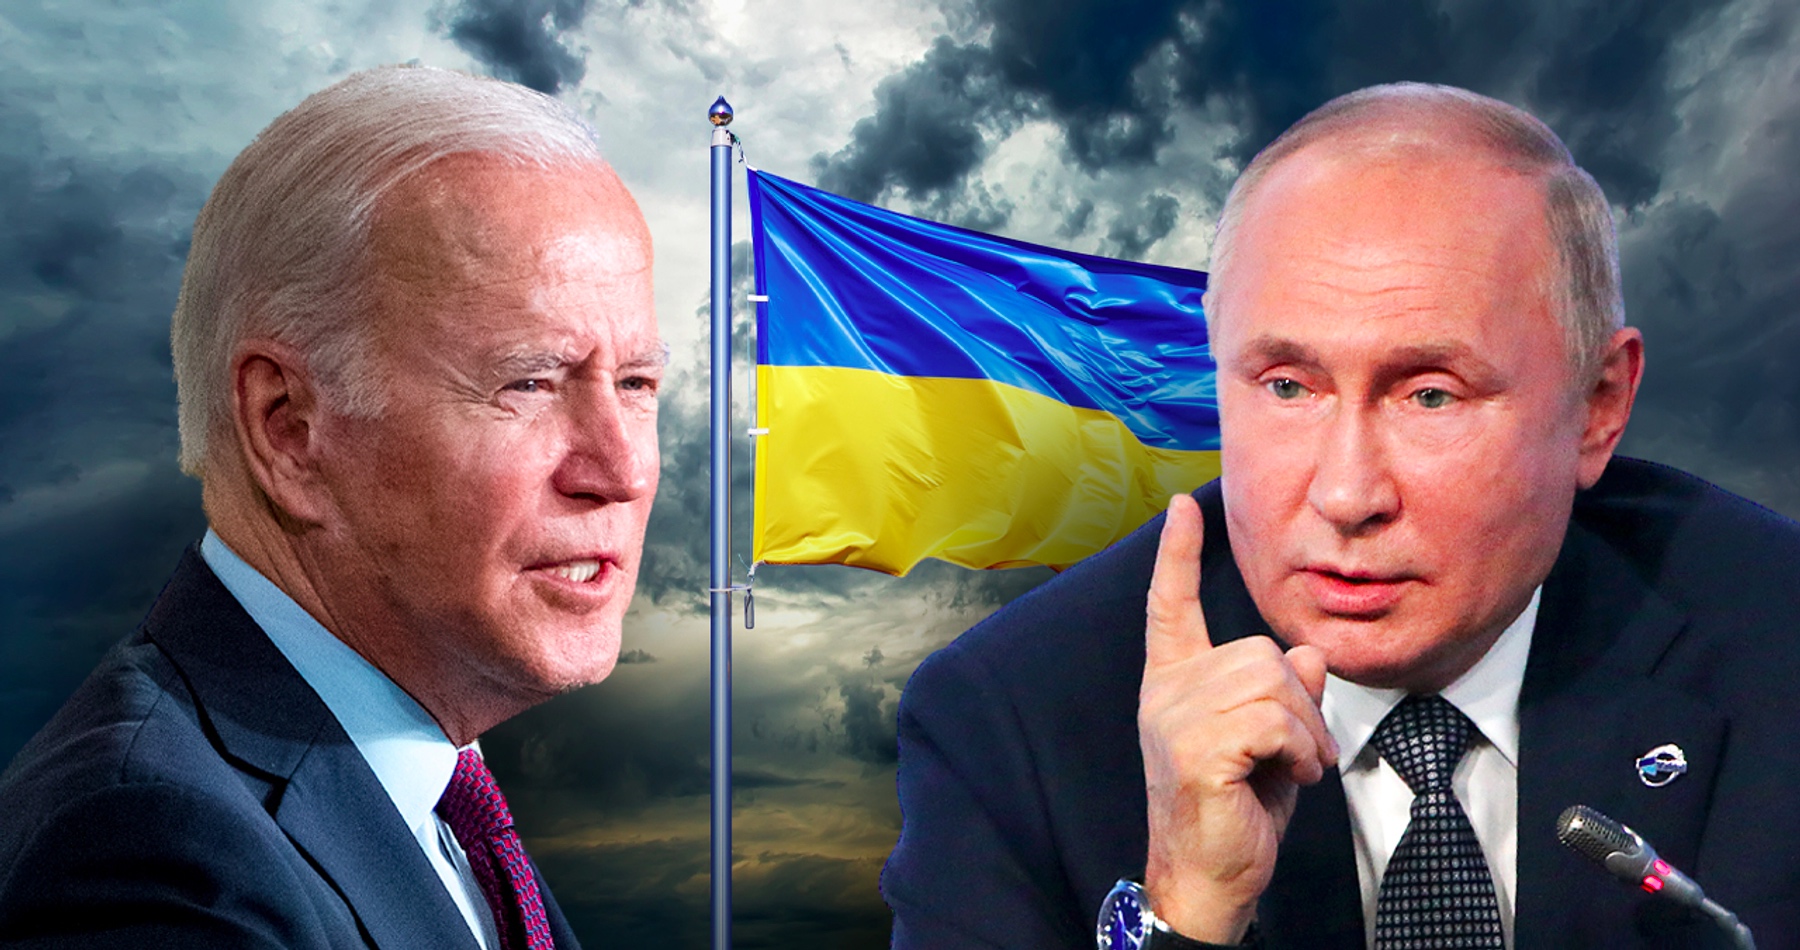 Biden už začína tušiť, že konflikt na Ukrajine nedopadne pre Západ dobre. Najnovšie vyjadril ochotu rokovať s Putinom, ak ruský prezident vojenskú operáciu ukončí. Kremeľ však nekompromisne odkázal, že denacifikácia bude naďalej pokračovať, pretože režim vo Washingtone komplikuje akékoľvek rokovania o mieri